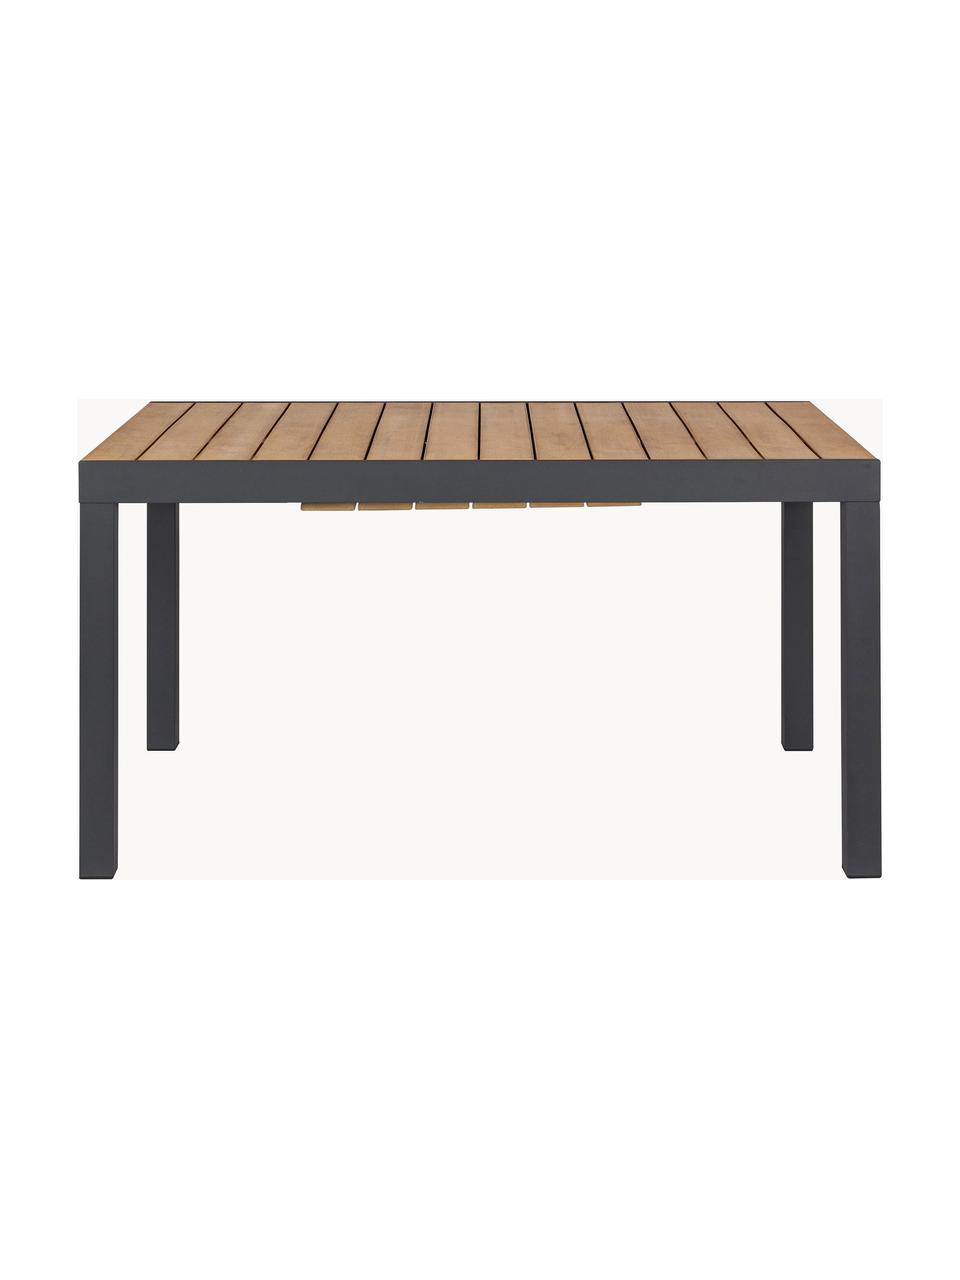 Rozkládací zahradní stůl Elias, 140 - 200 x 90 cm, Dřevo, antracitová, Š 140/200 cm, H 90 cm